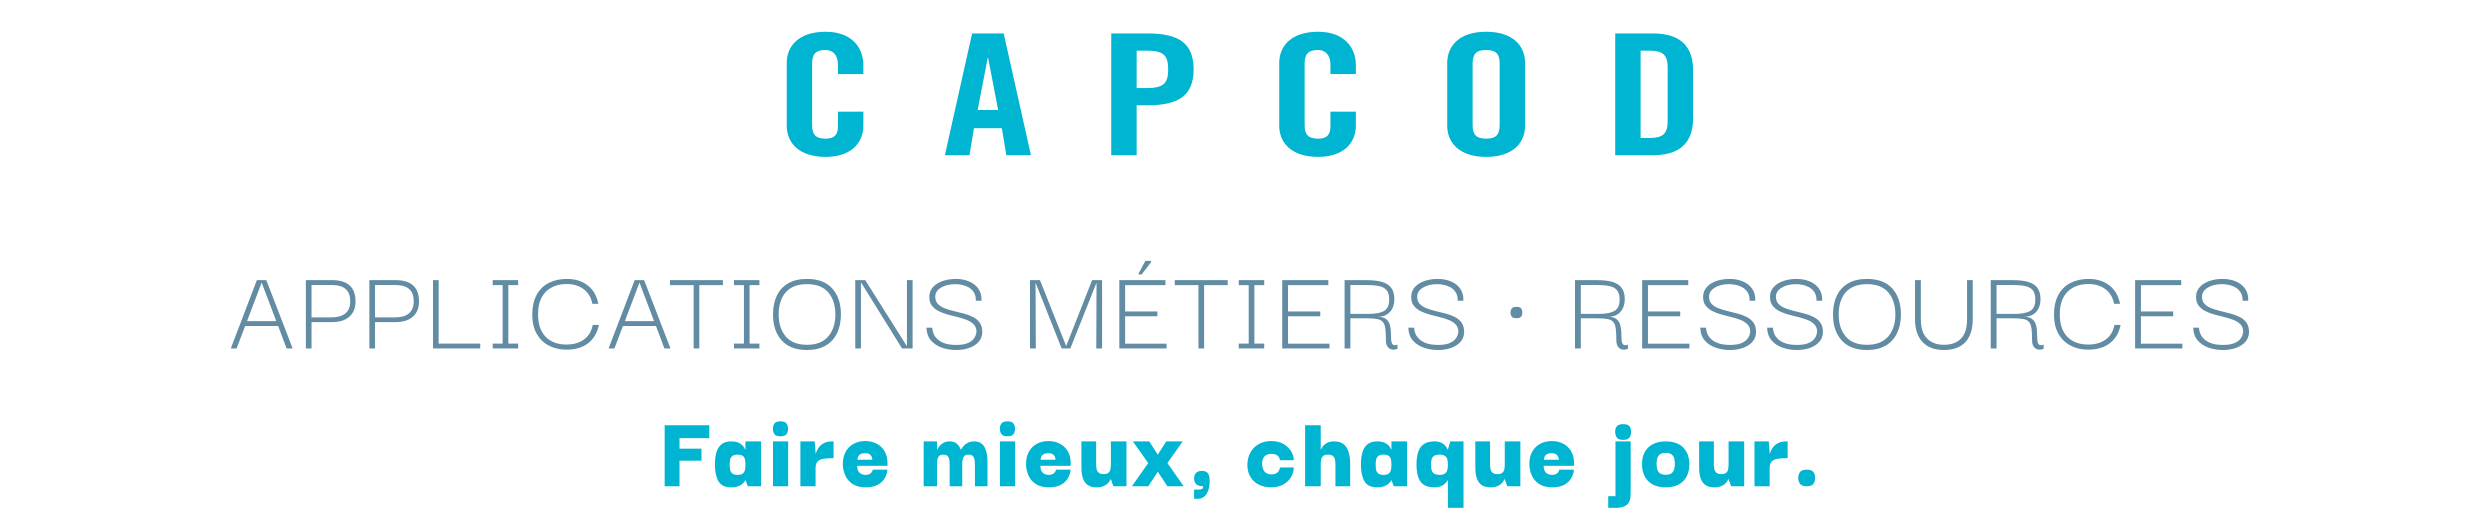 CAPCOD-Applications Métiers et Ressources-Faire mieux, chaque jour